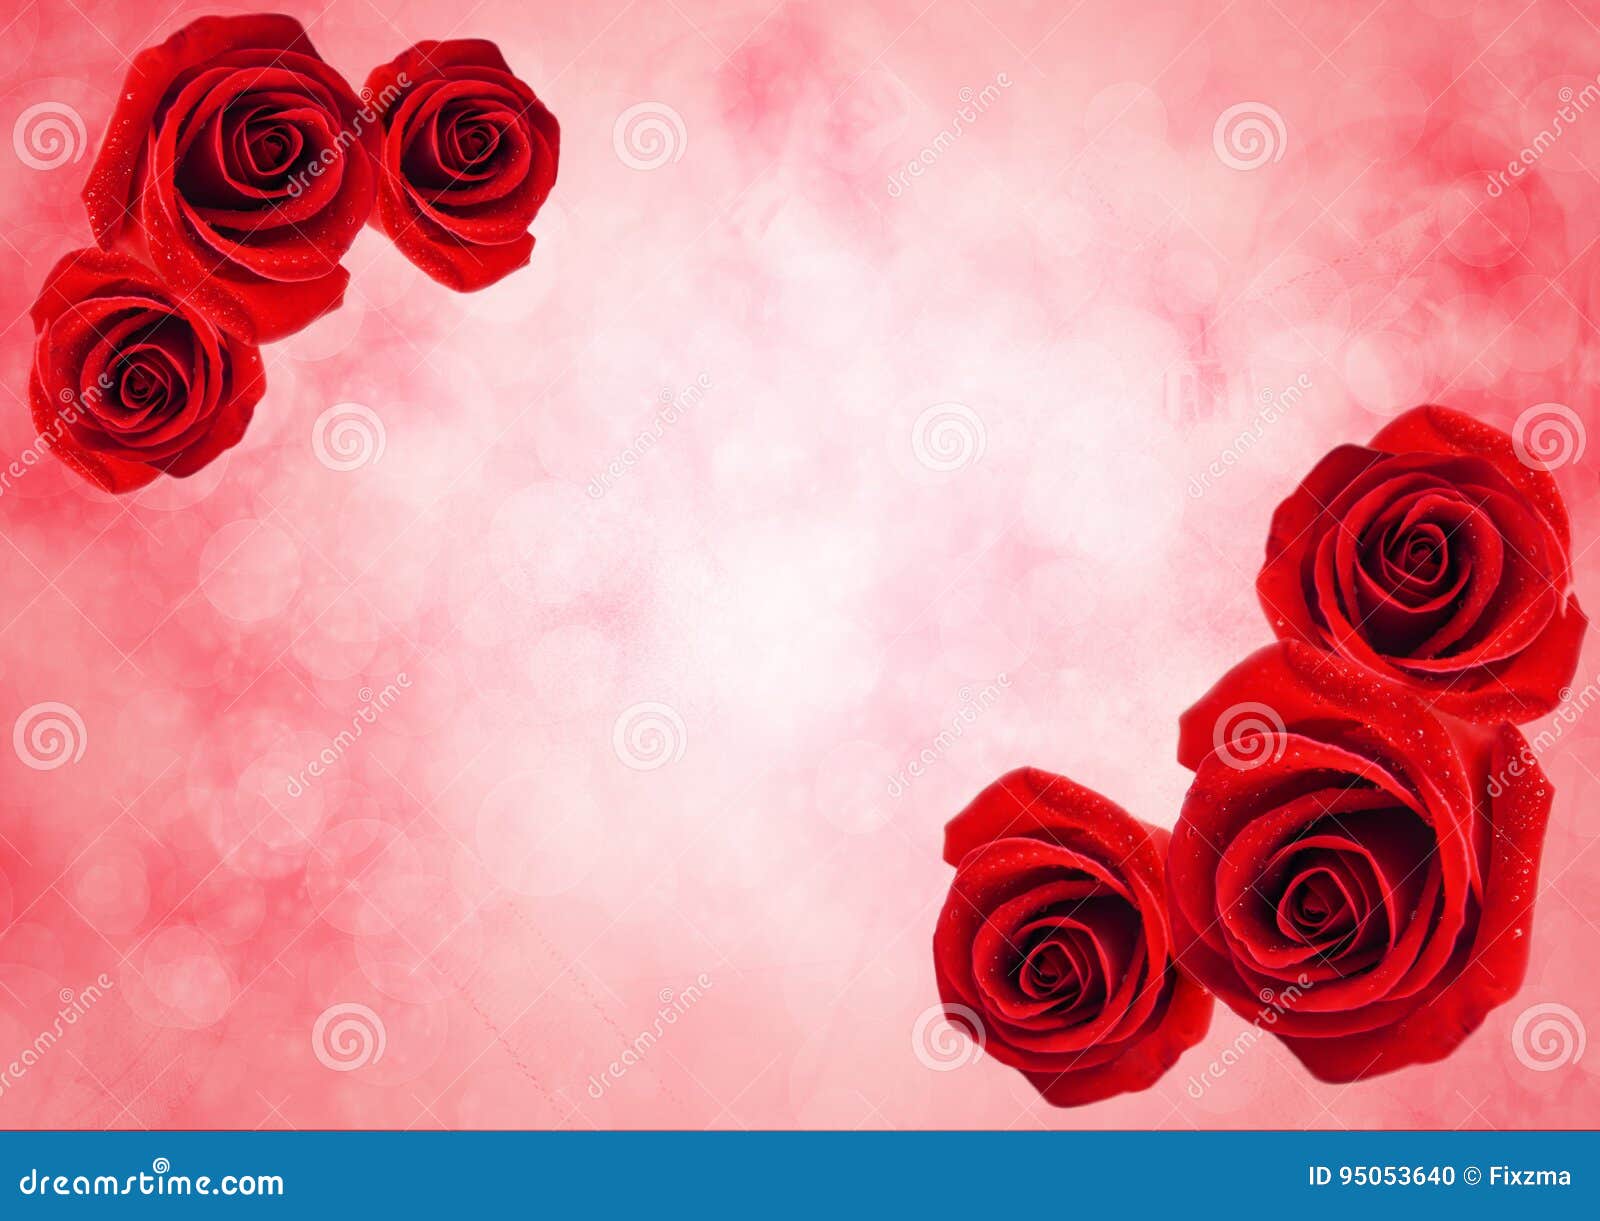 Nền ánh sáng Bokeh kết hợp với hoa hồng đỏ thanh khiết tạo nên một cảm giác tràn đầy sức sống. Đây là một tác phẩm nghệ thuật hoàn hảo để bạn đặt làm hình nền và giúp cho mỗi ngày của bạn trở nên đẹp hơn.